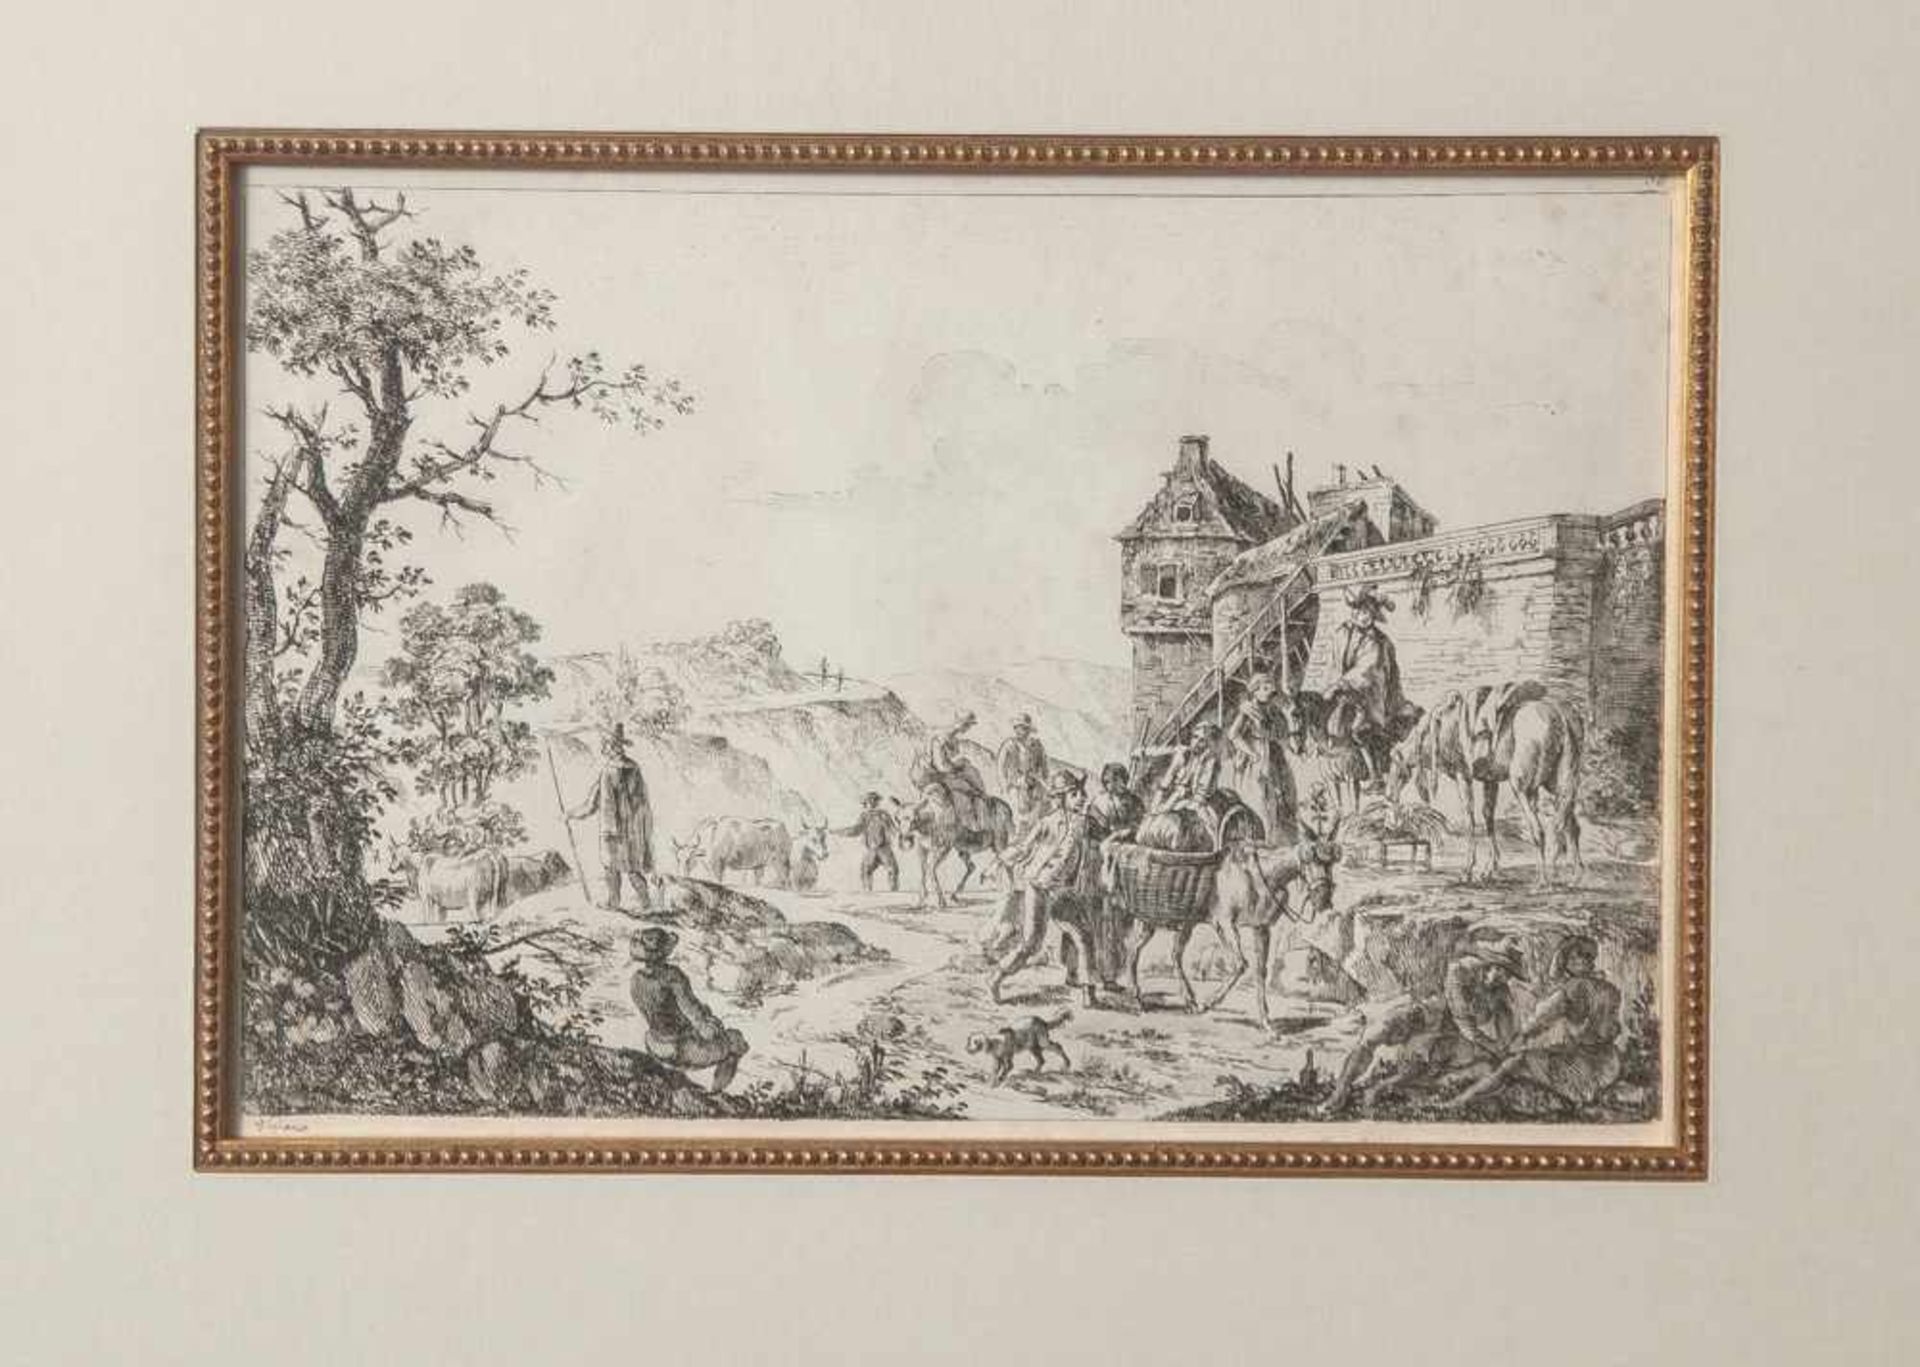 Viglianis, Kupferstich um 1800, Landschaft in der Campagna mit reicher figürlicher Staffage vor